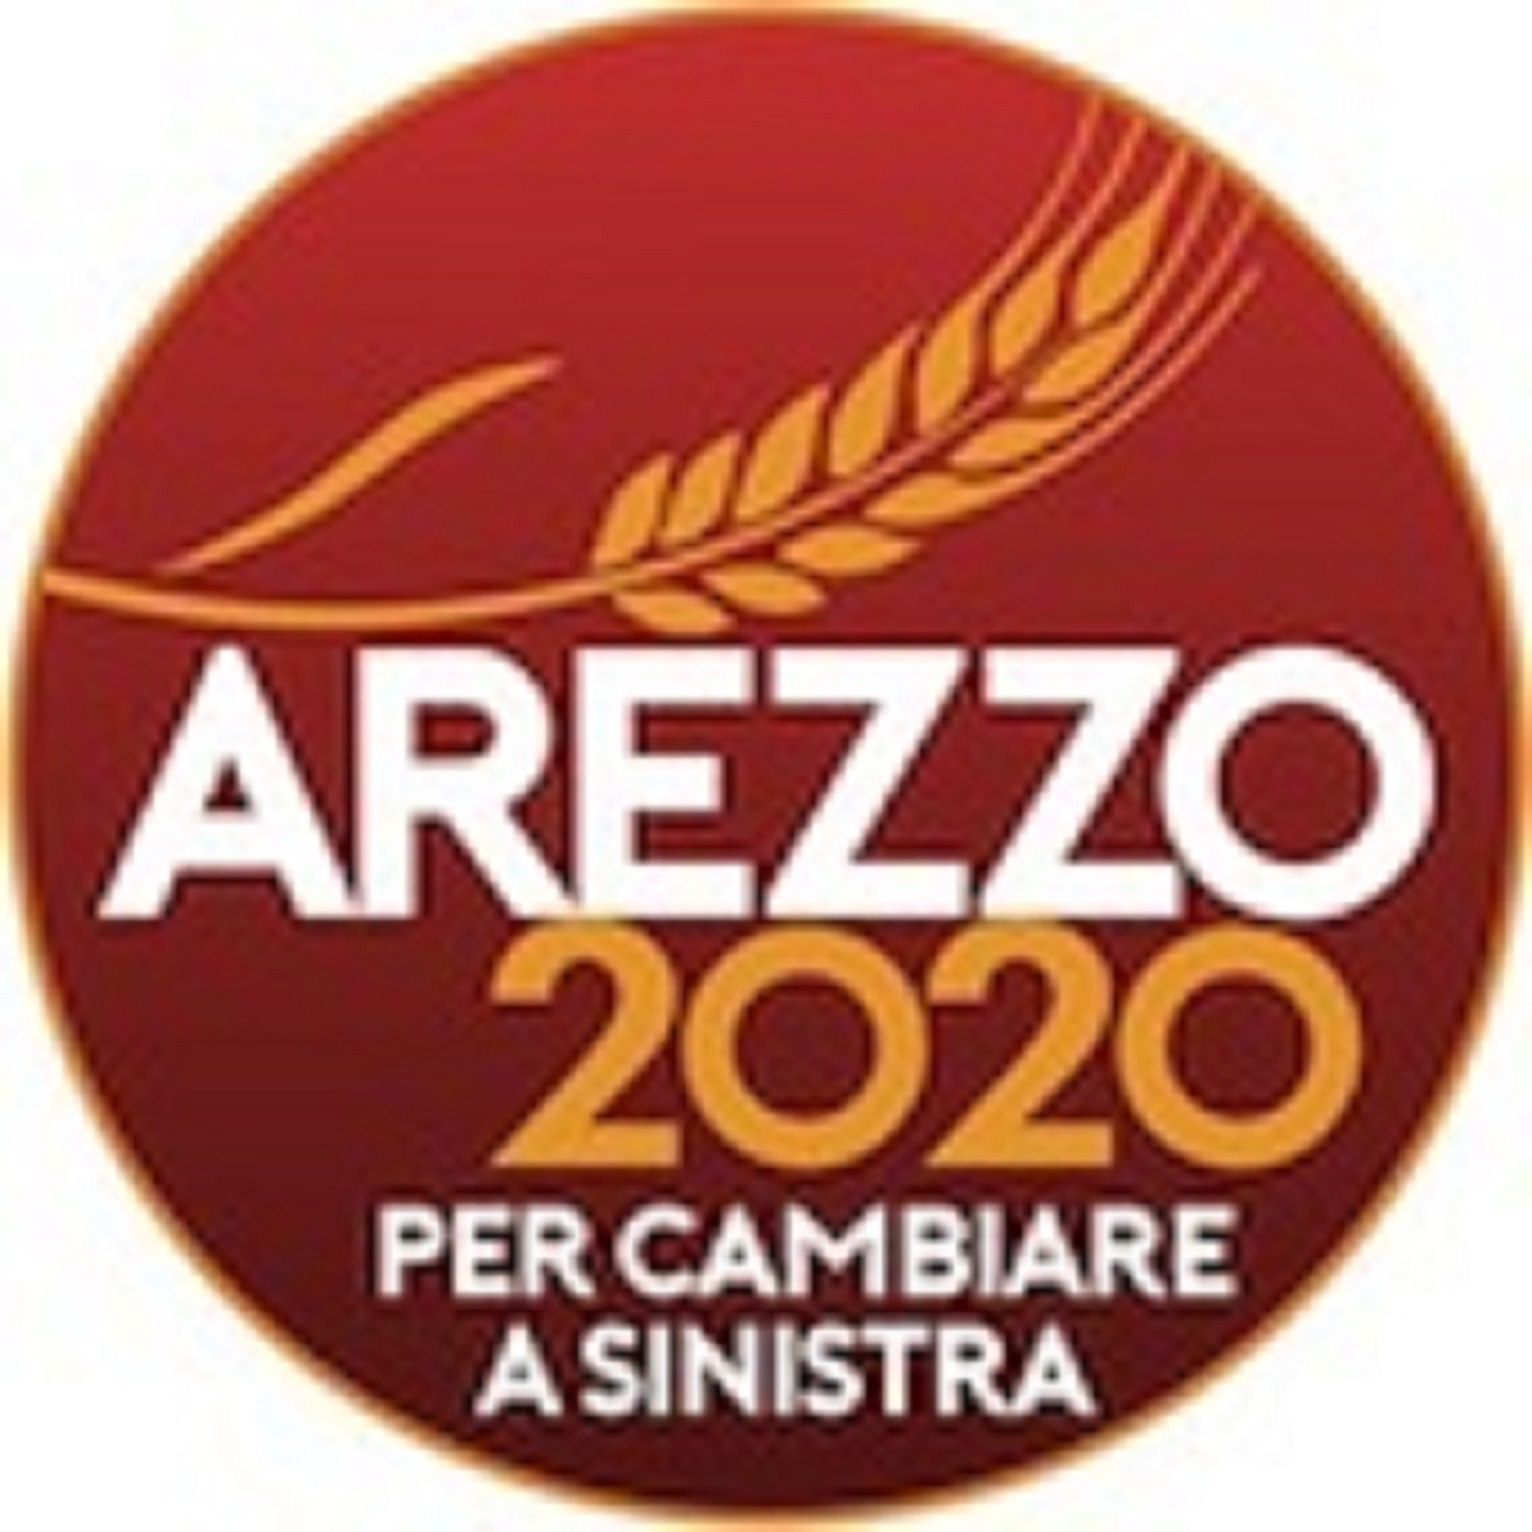 Arezzo 2020: “Tari: rinvio solo per una platea limitata. La mancanza di coraggio dell’amministrazione”